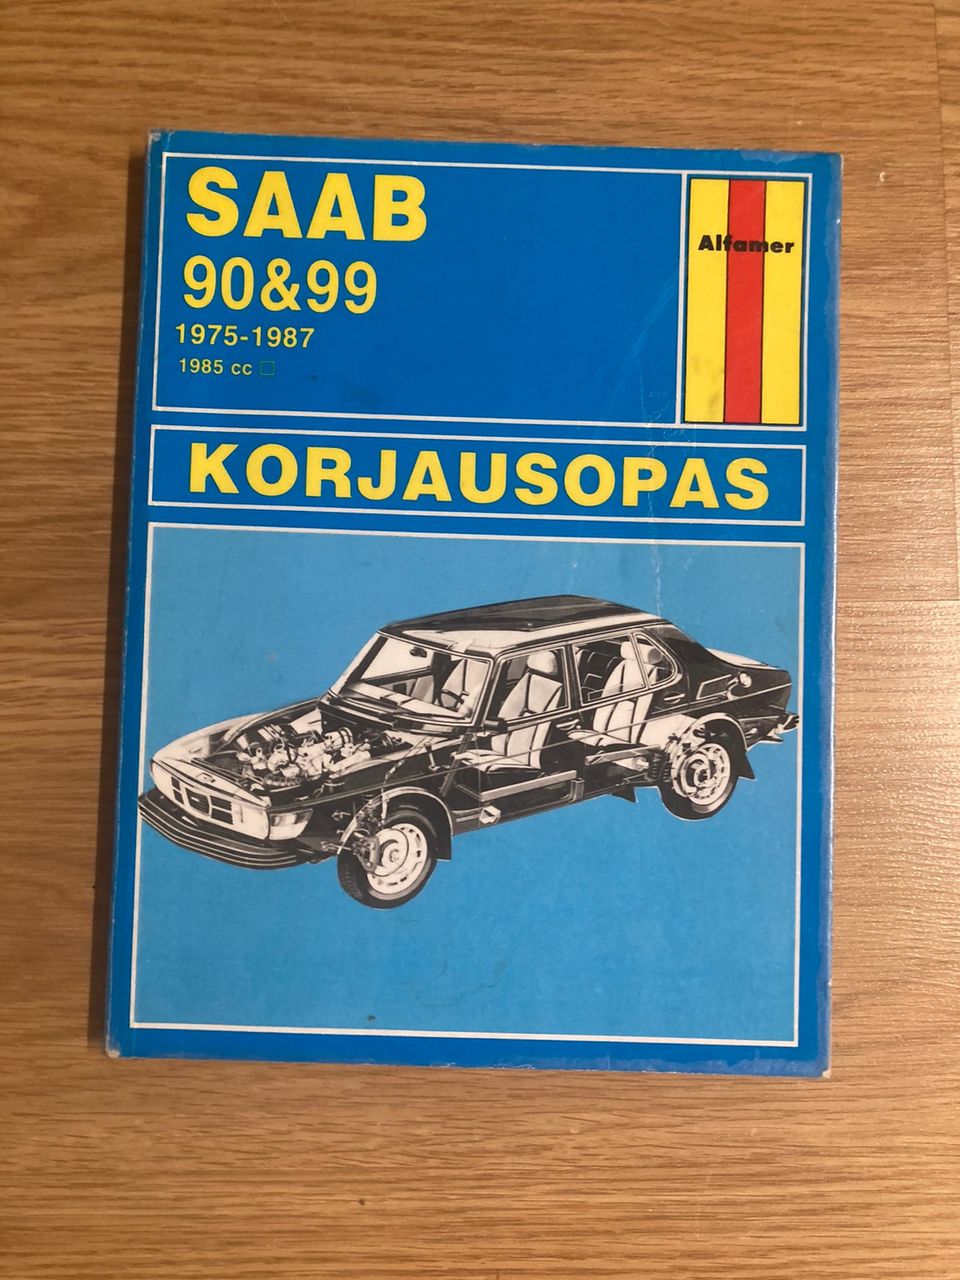 Saab 90&99 korjausopas